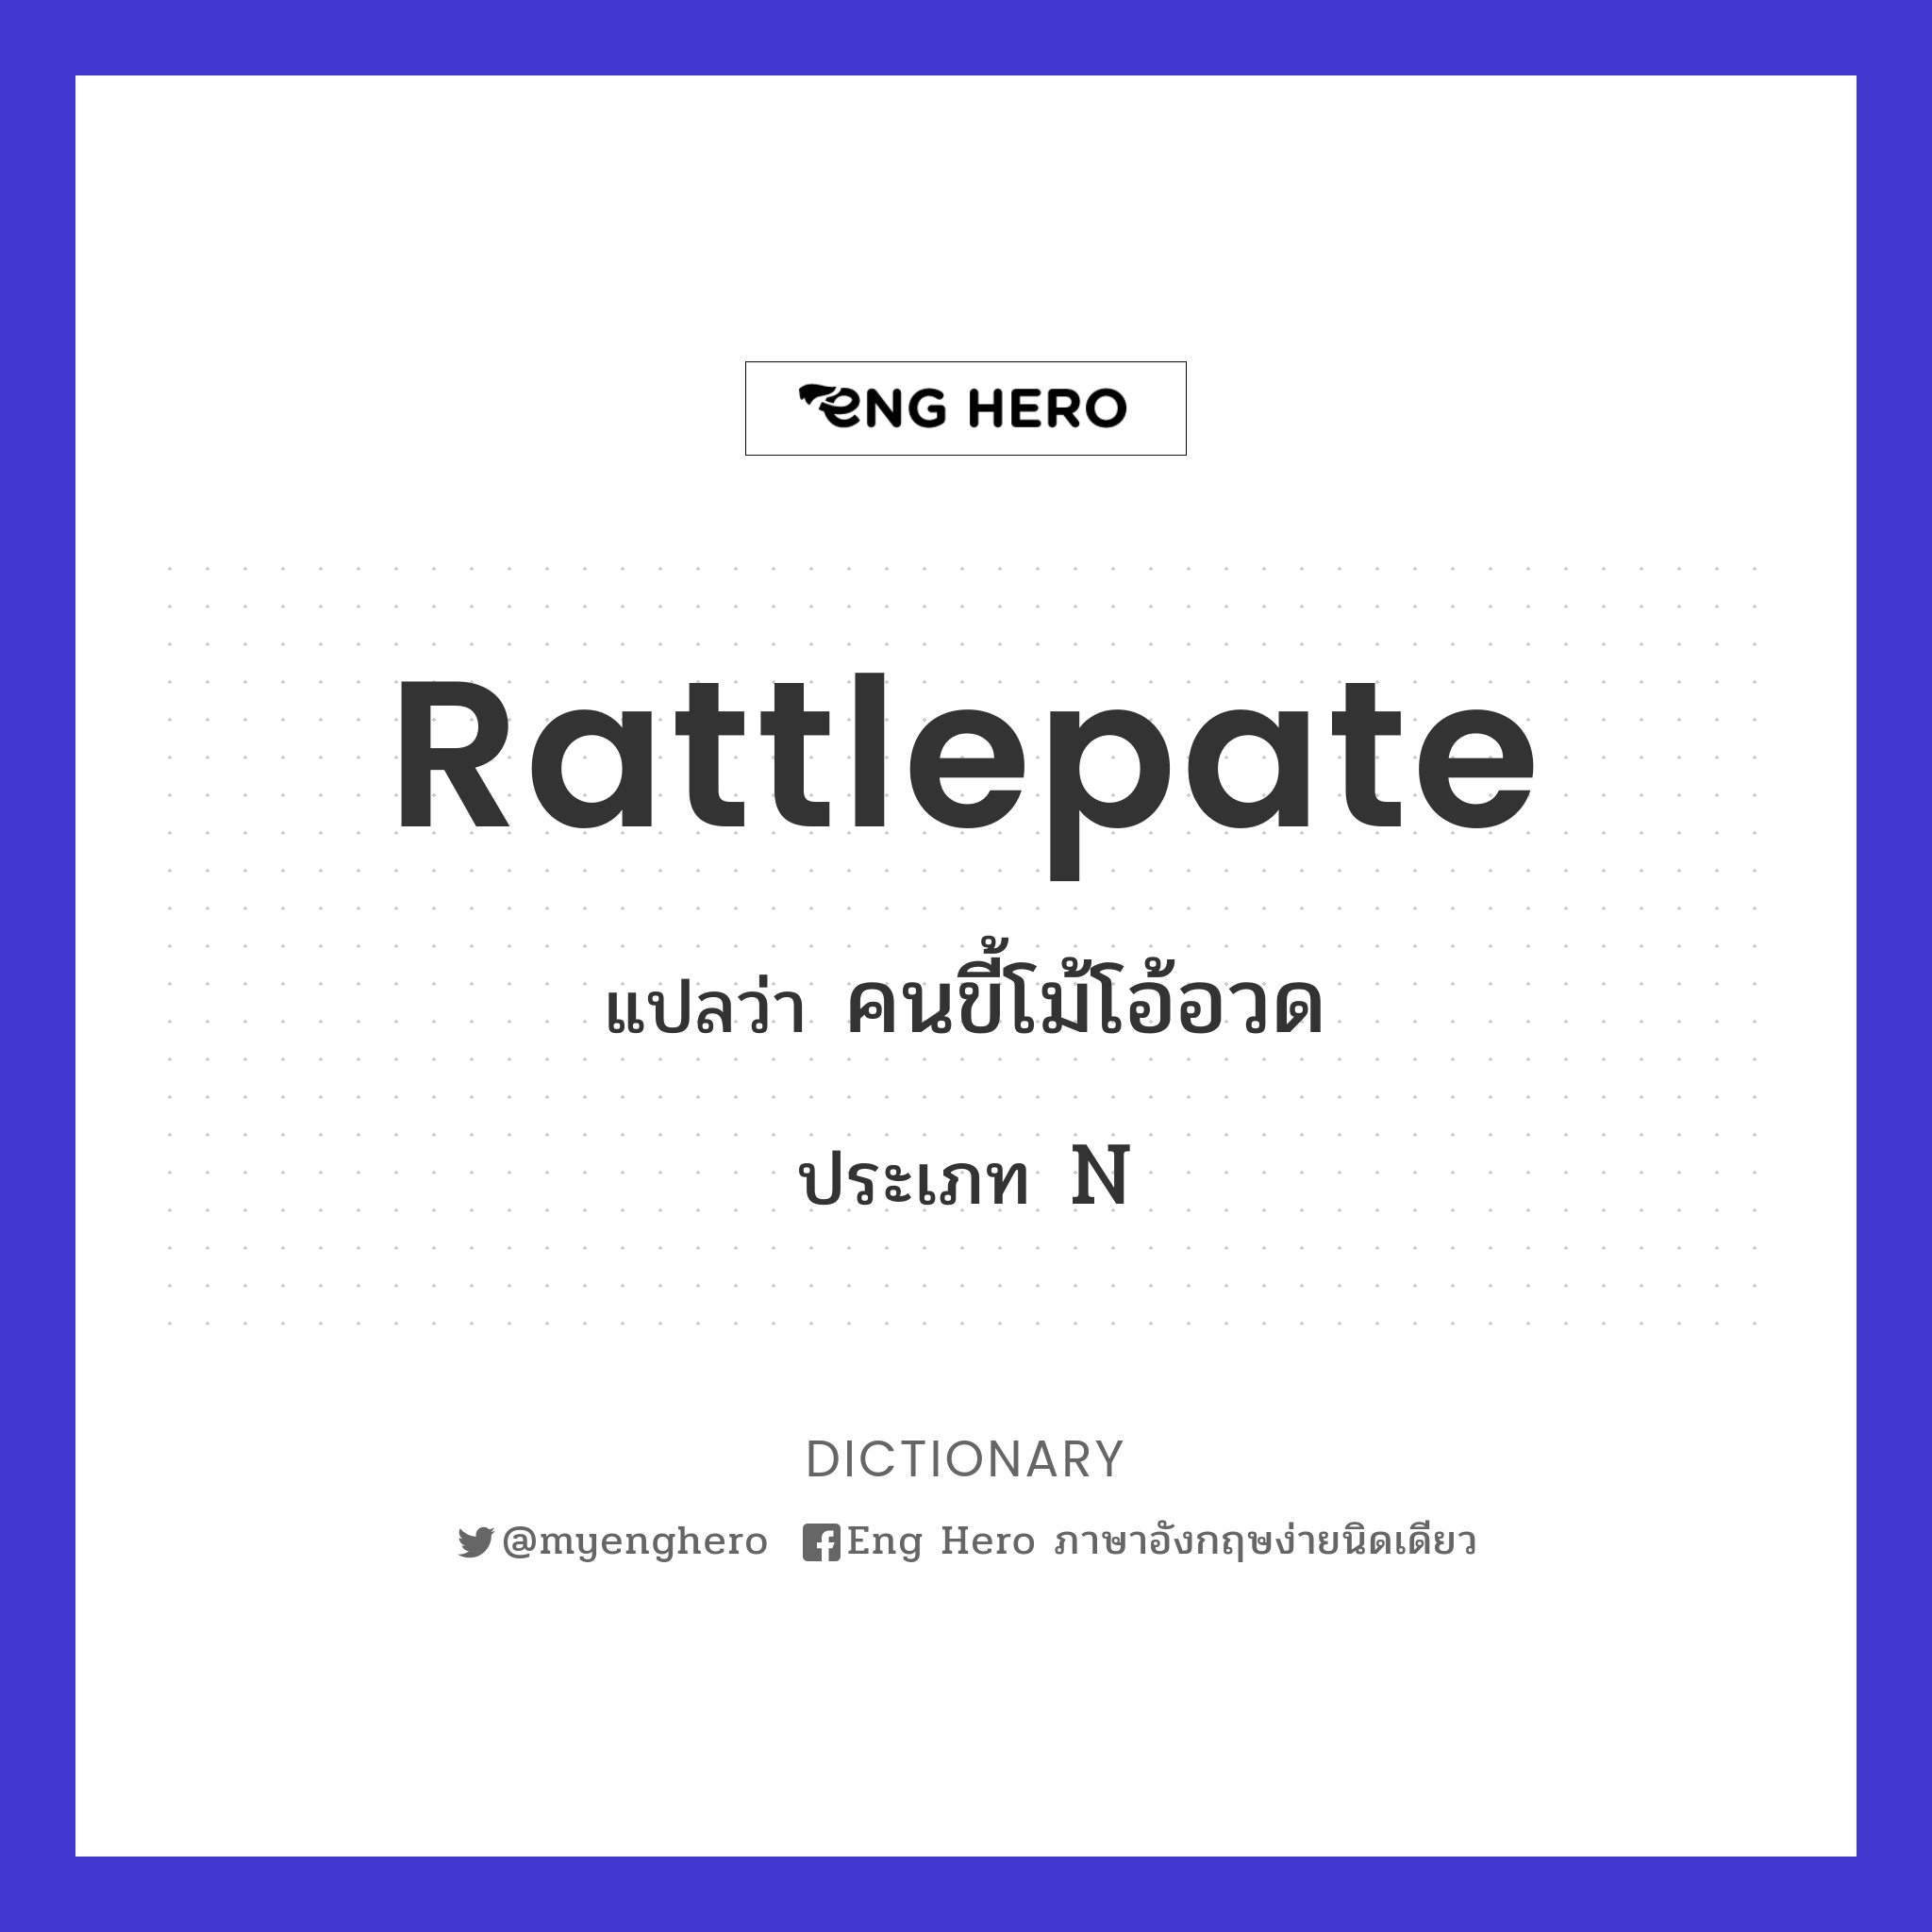 rattlepate